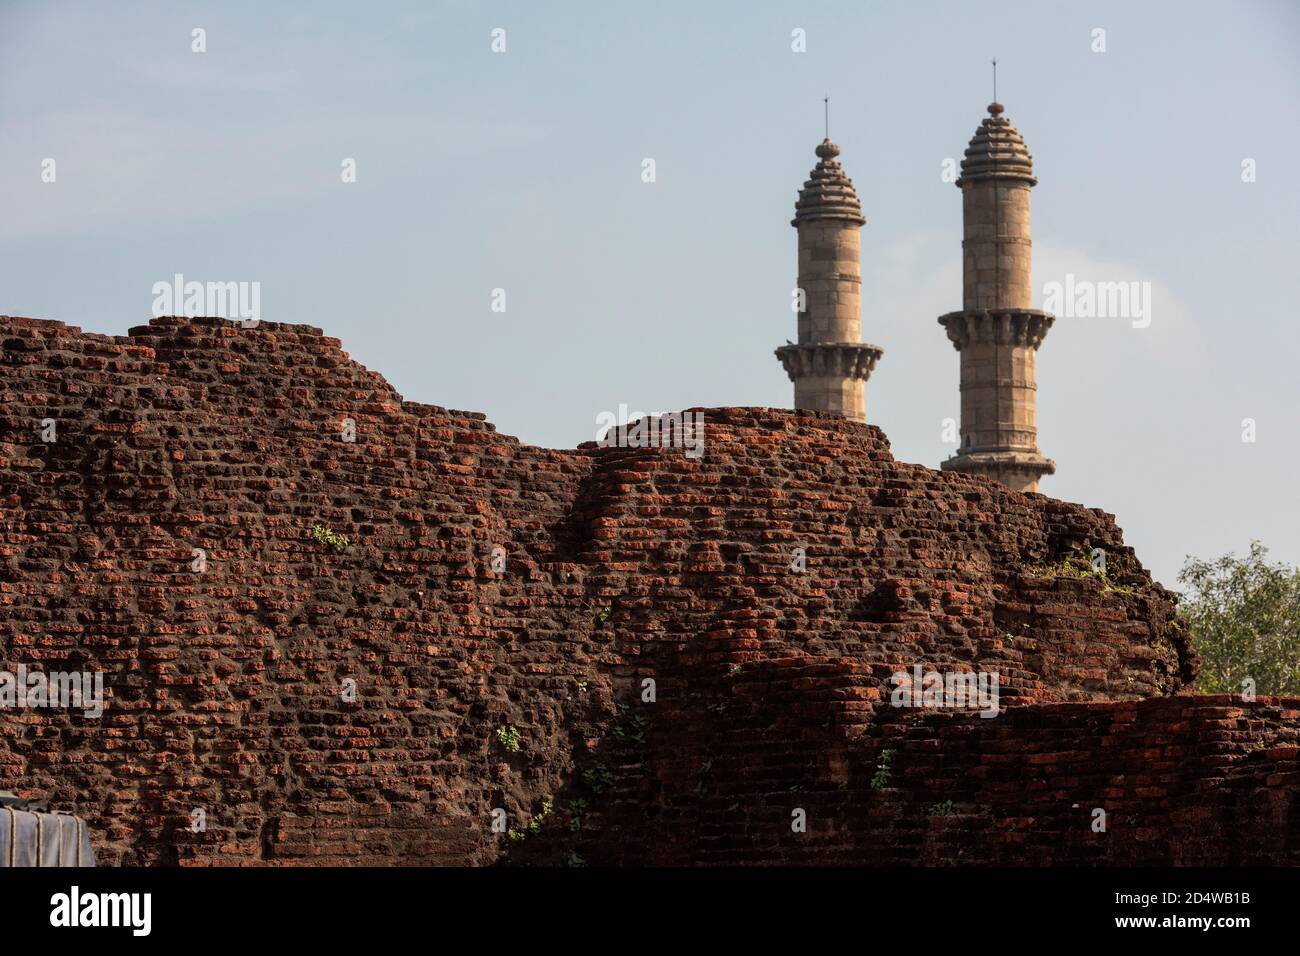 Jami Moschee ( jami Masjid ), Champaner-Pavagadh Archäologischen Park, UNESCO-Weltkulturerbe, Gujarat, Indien. Stockfoto